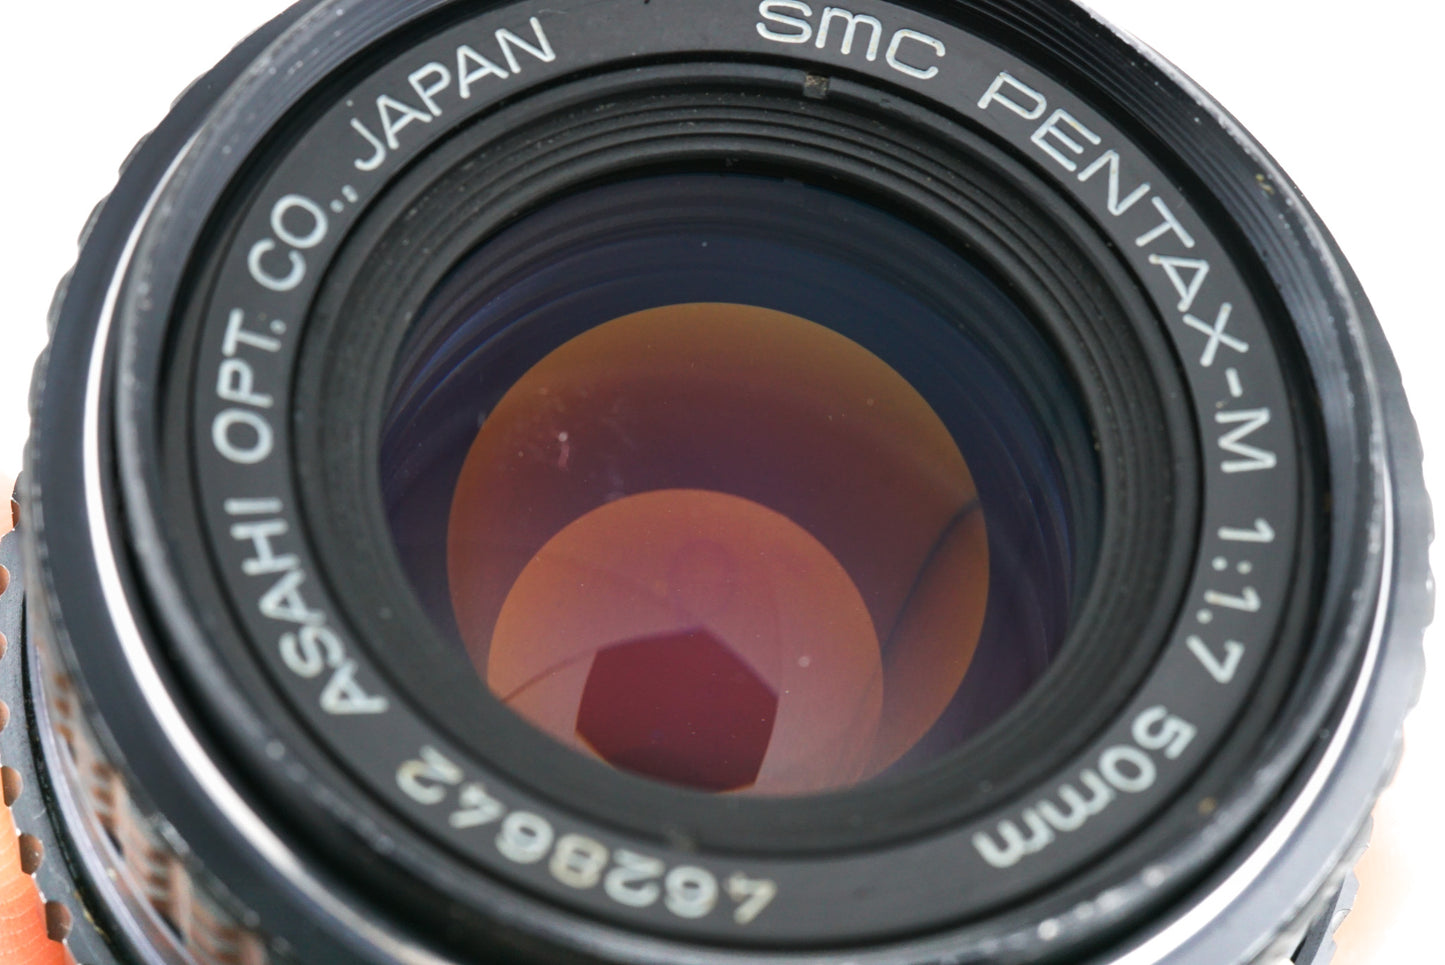 Pentax 50mm f1.7 SMC Pentax-M